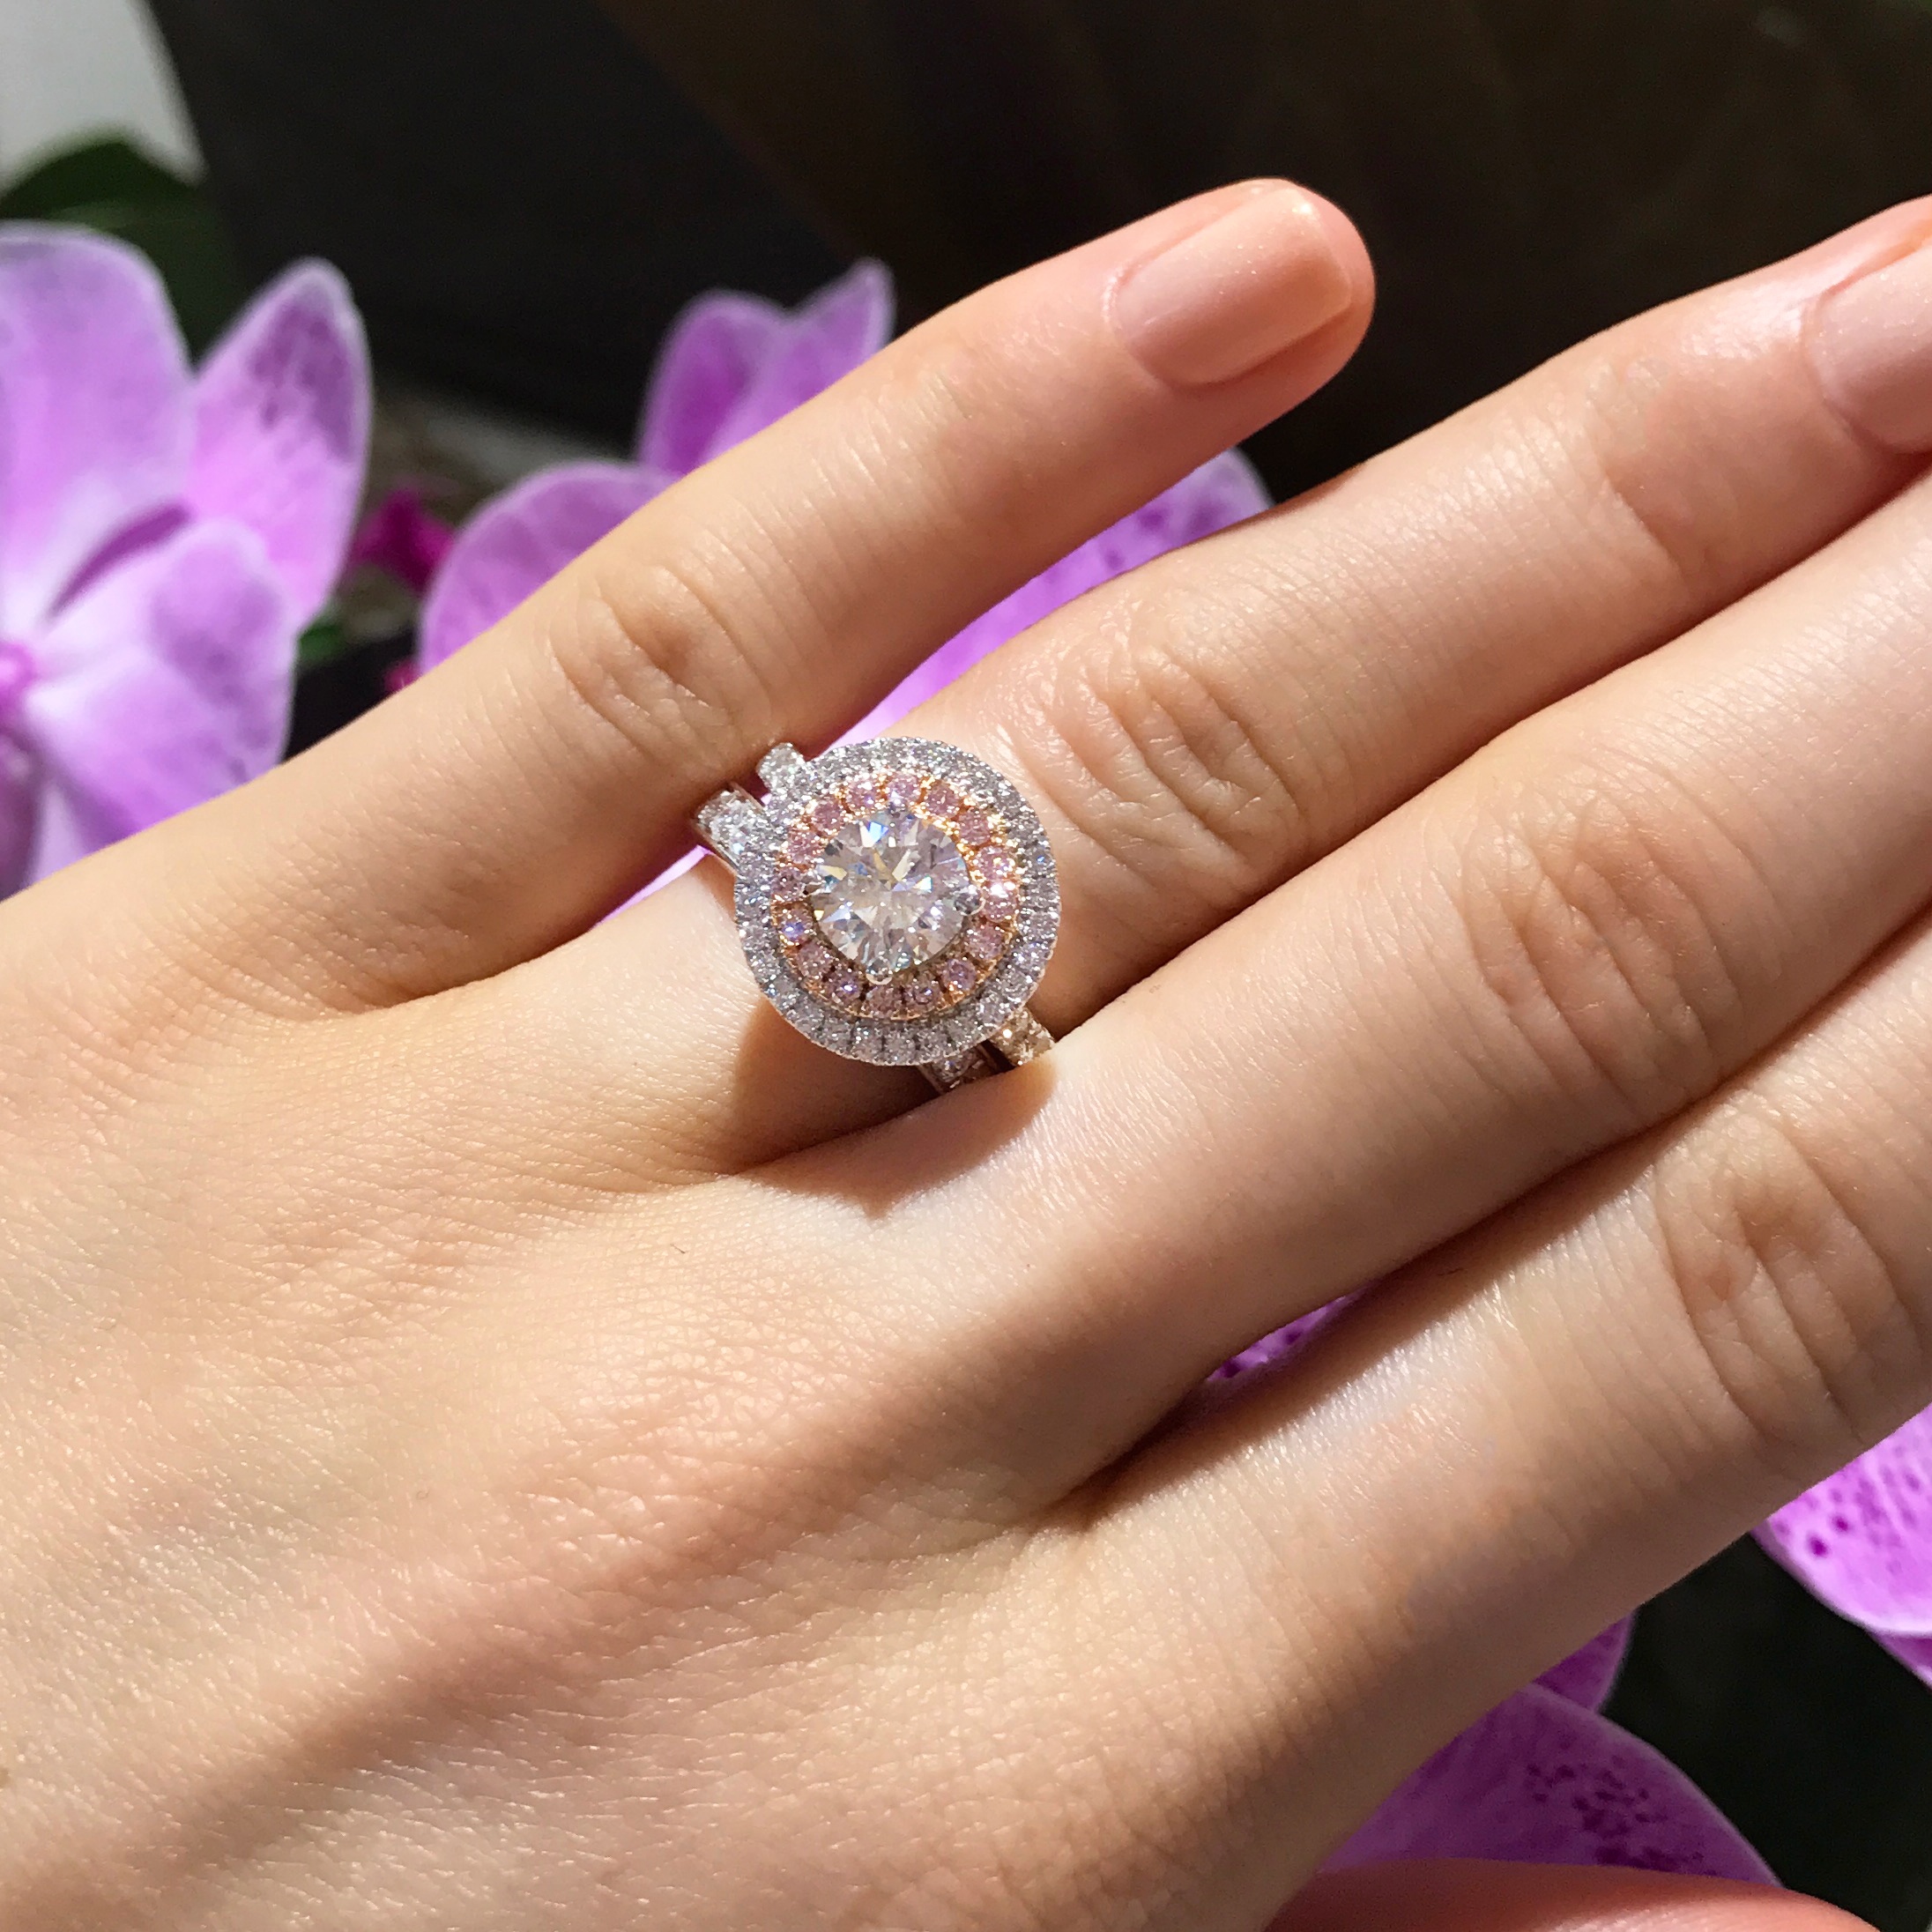 Matthew_Ely_Pink_Argyle_Diamond_Engagement_Ring.jpg